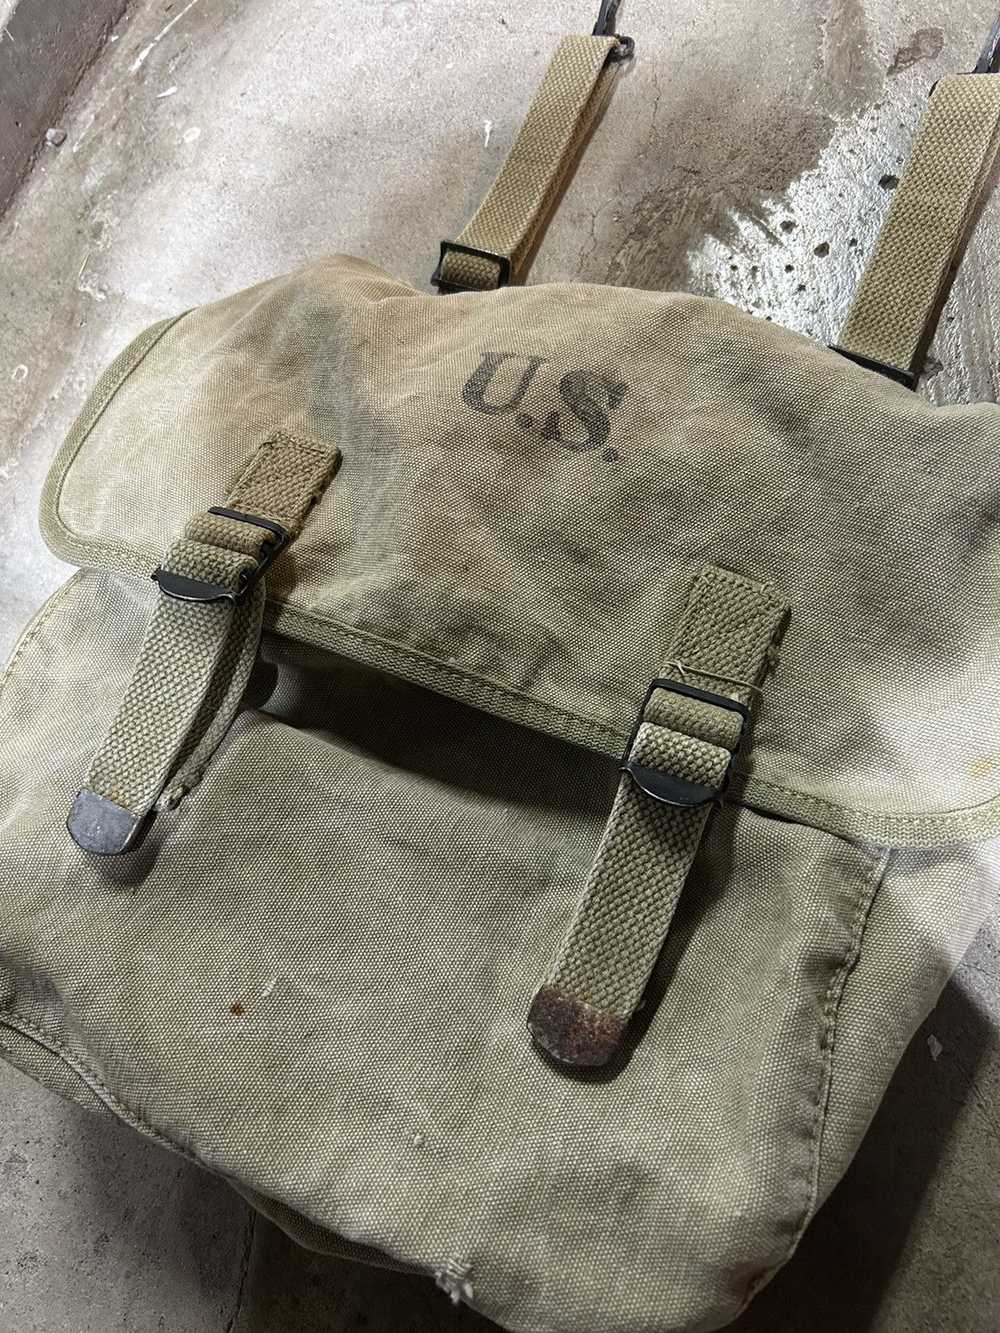 Military × Vintage Musette Messenger Bag, U.S Arm… - image 3